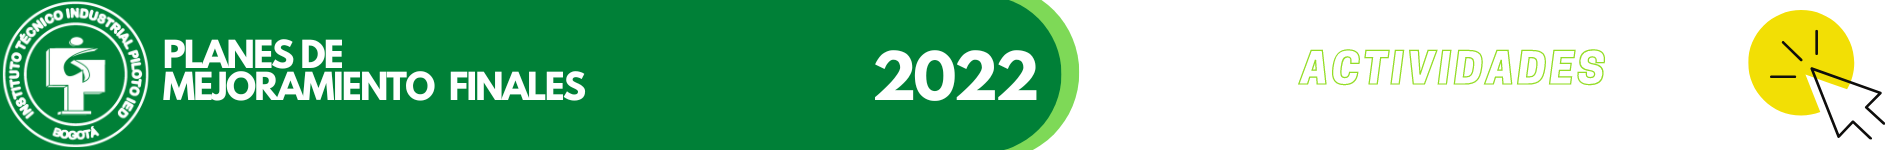 PLANES DE MEJORAMIENTO FINALES 2022